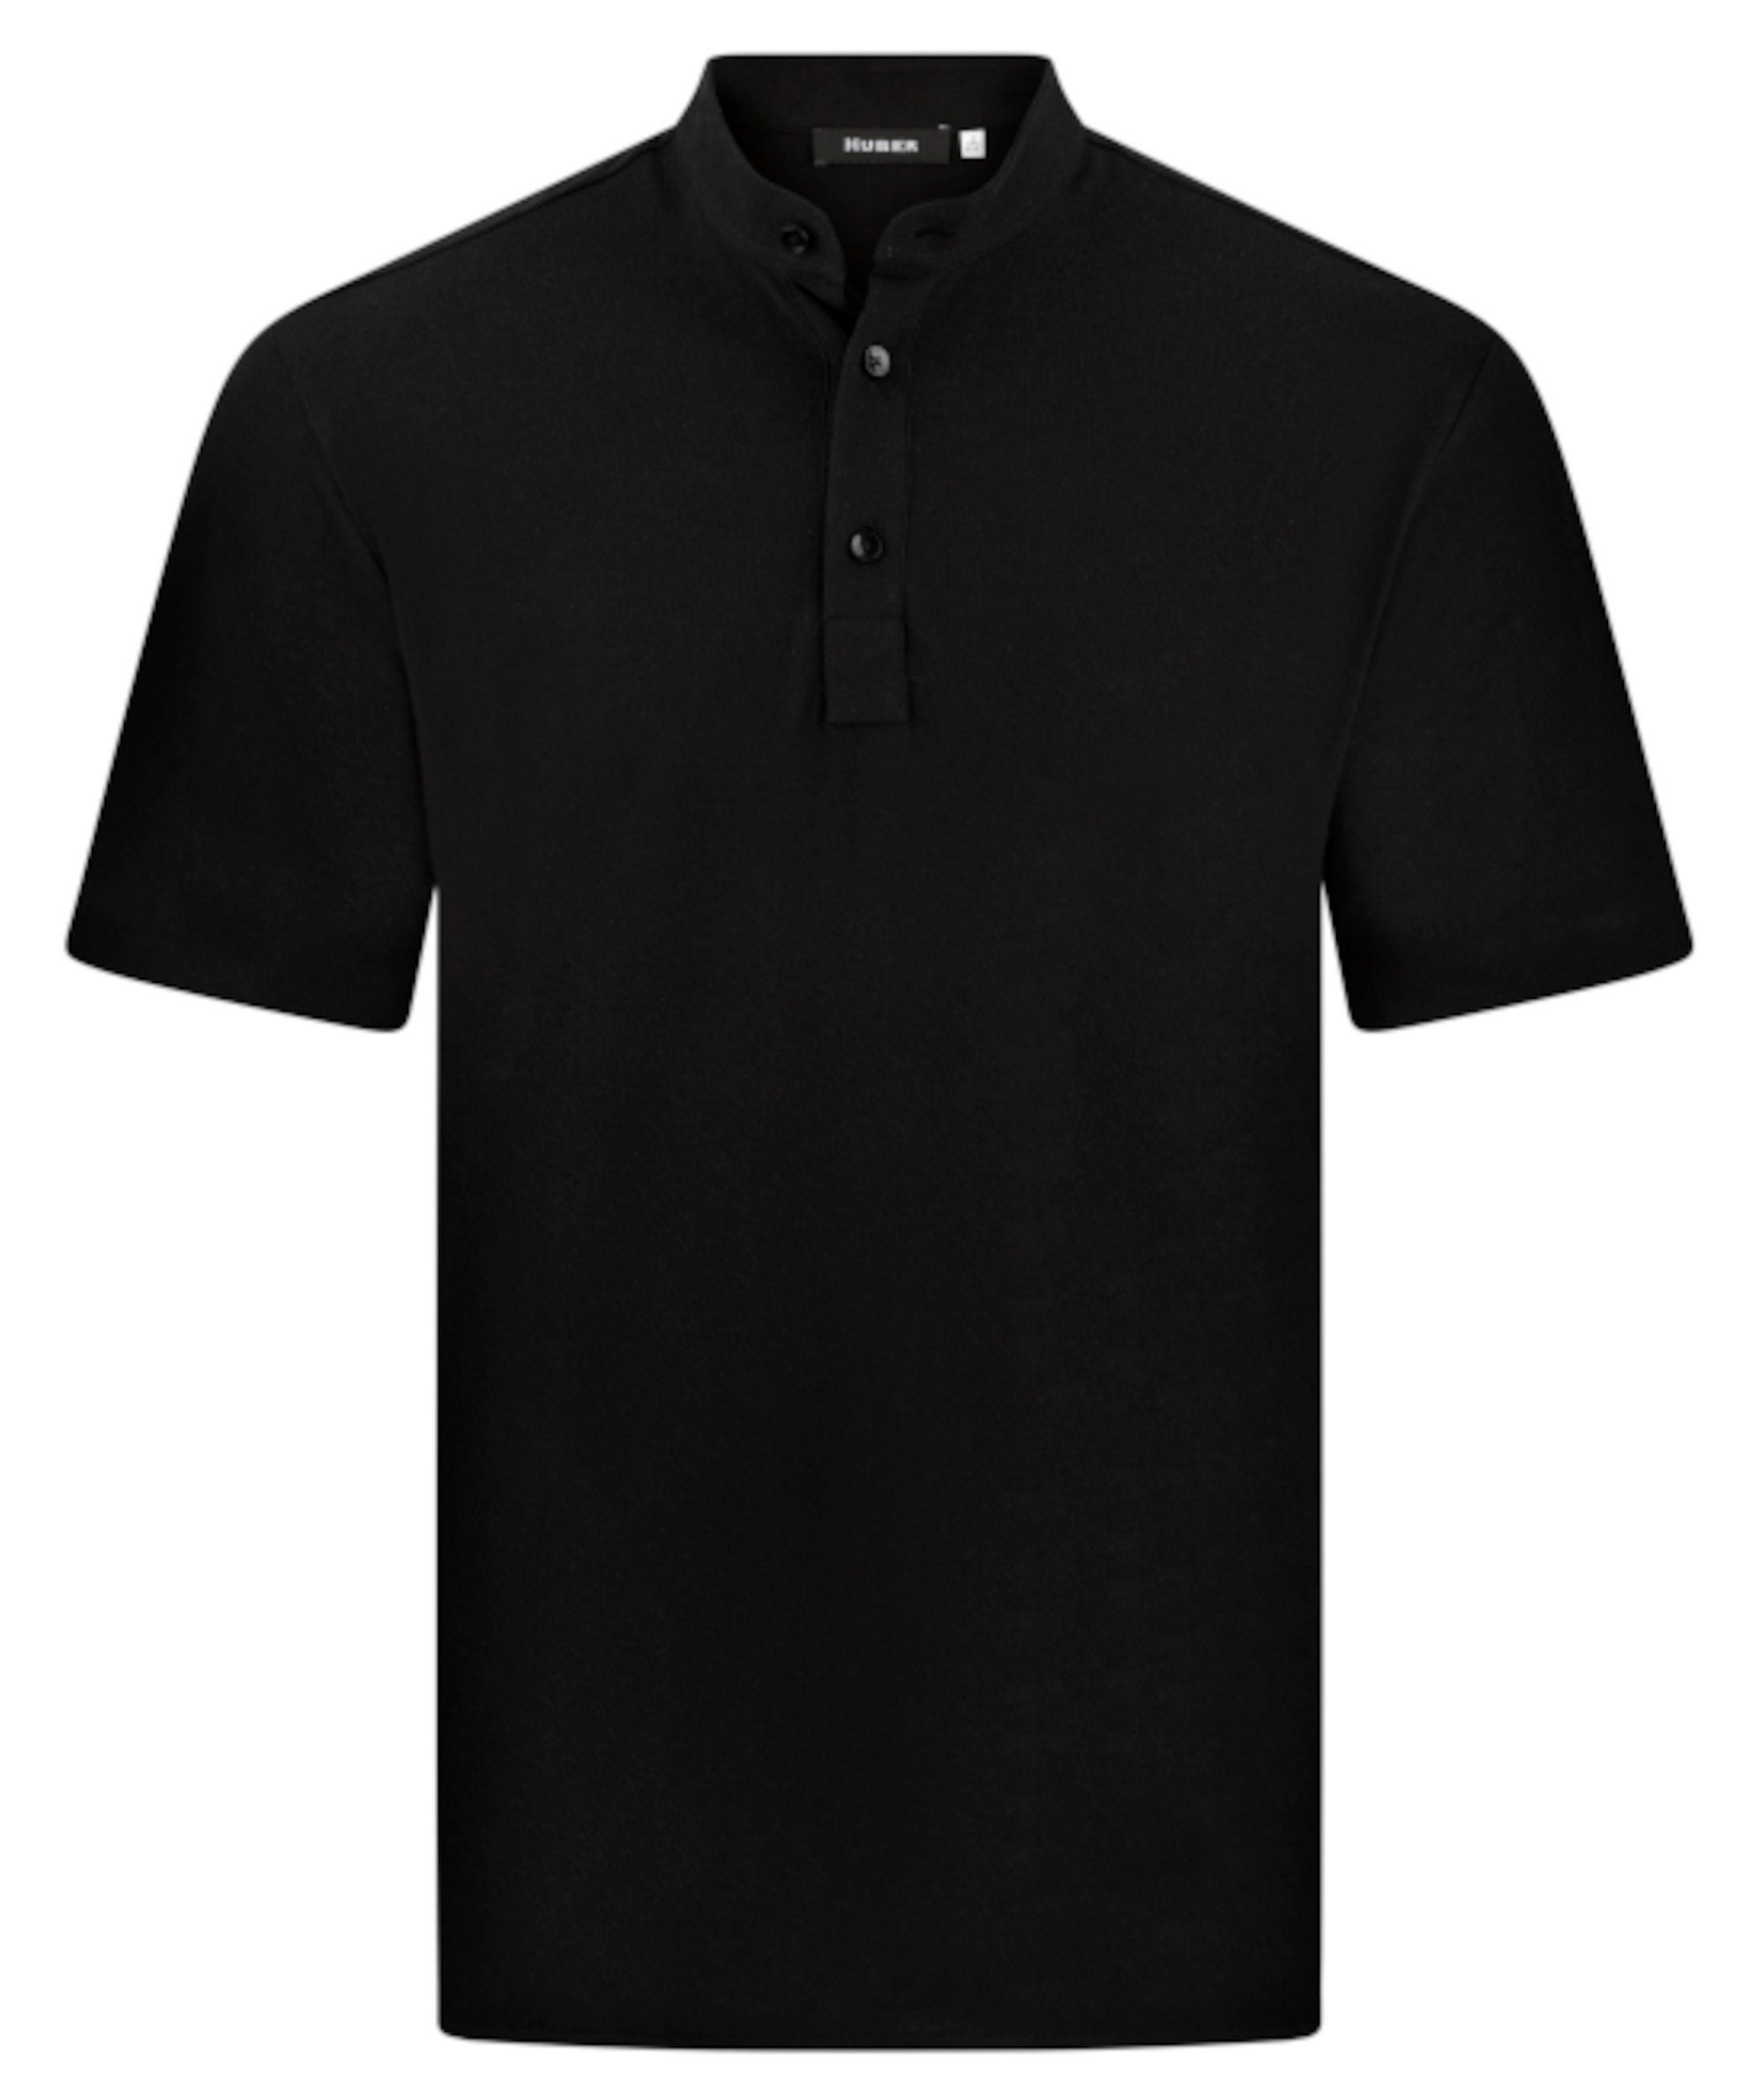 Made schwarz Stehkragen, HU-0201 Huber Fit, Pikee-Shirt Comfort weiter EU Poloshirt Hemden Kurzarm, in Schnitt,